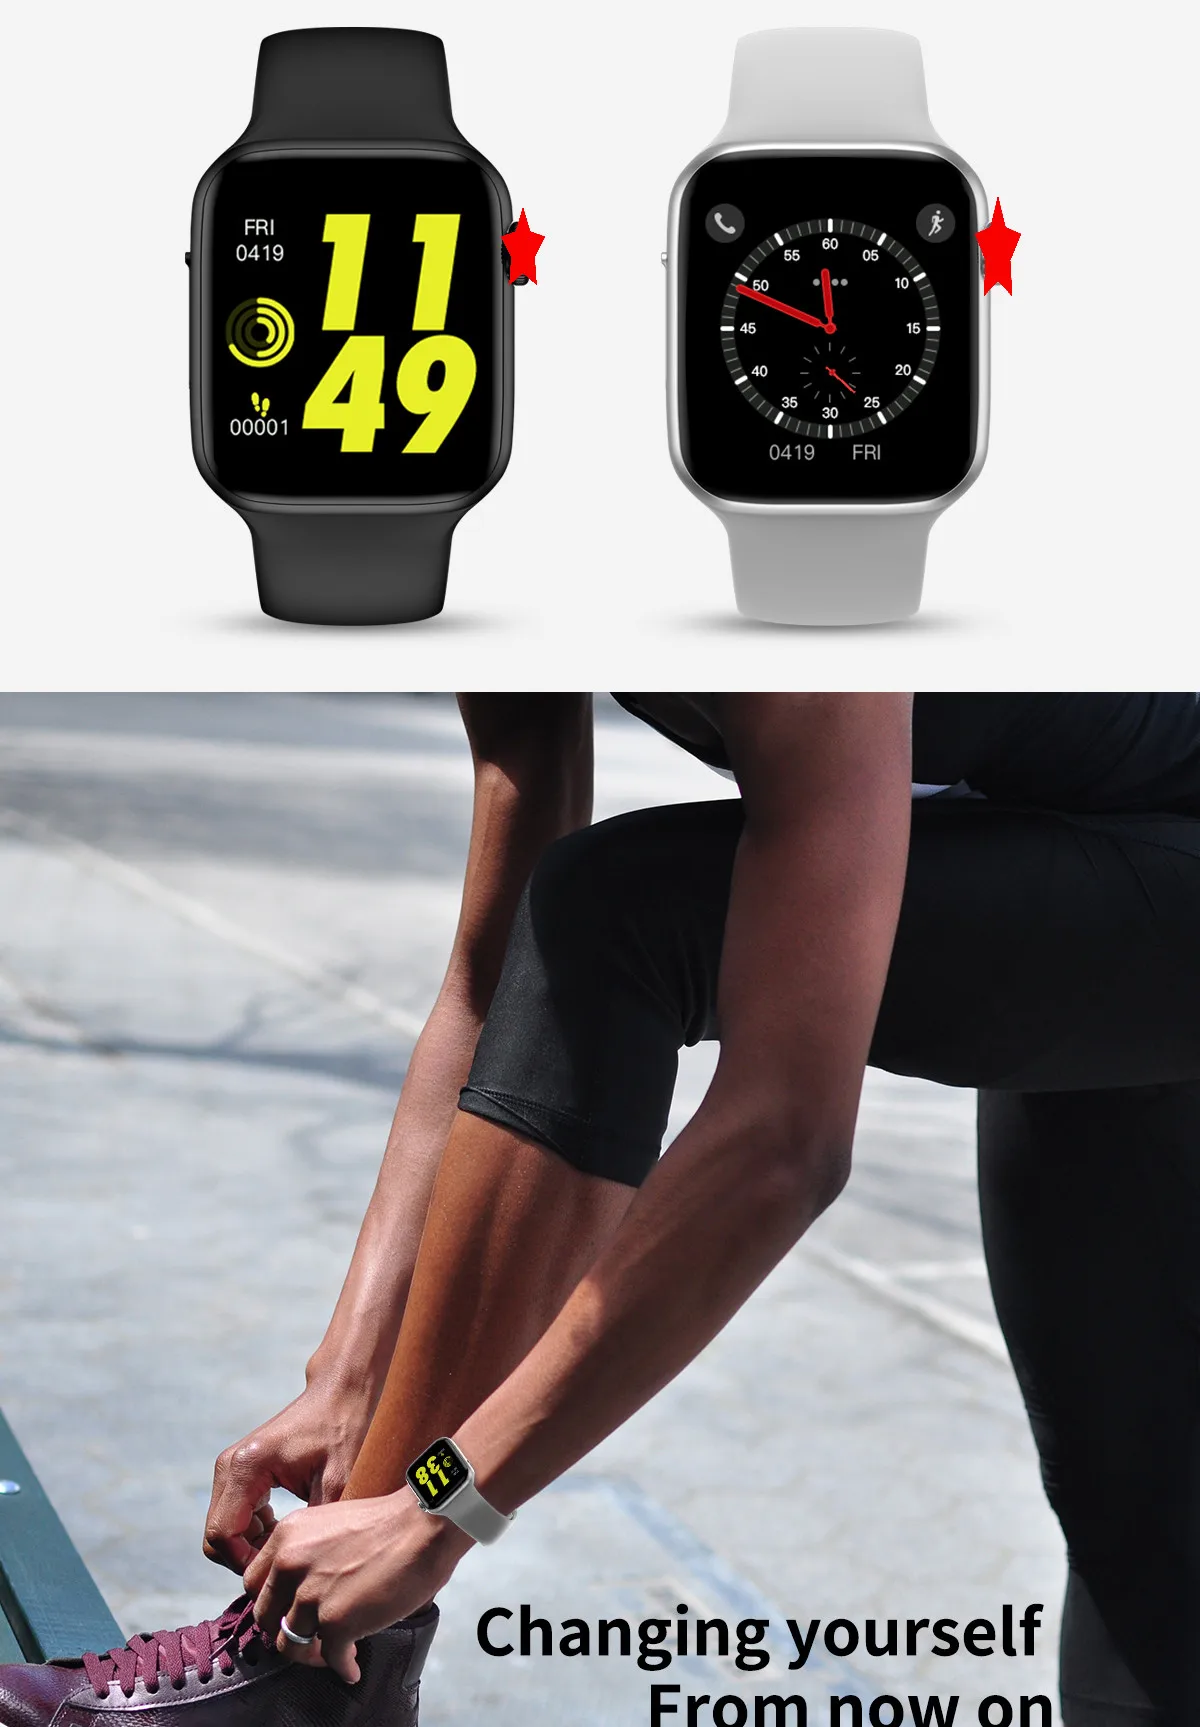 Bluetooth умные часы W34 ECG монитор сердечного ритма умные часы для мужчин для Android/ios huawei xiaomi samsung gear S3 pk GT08